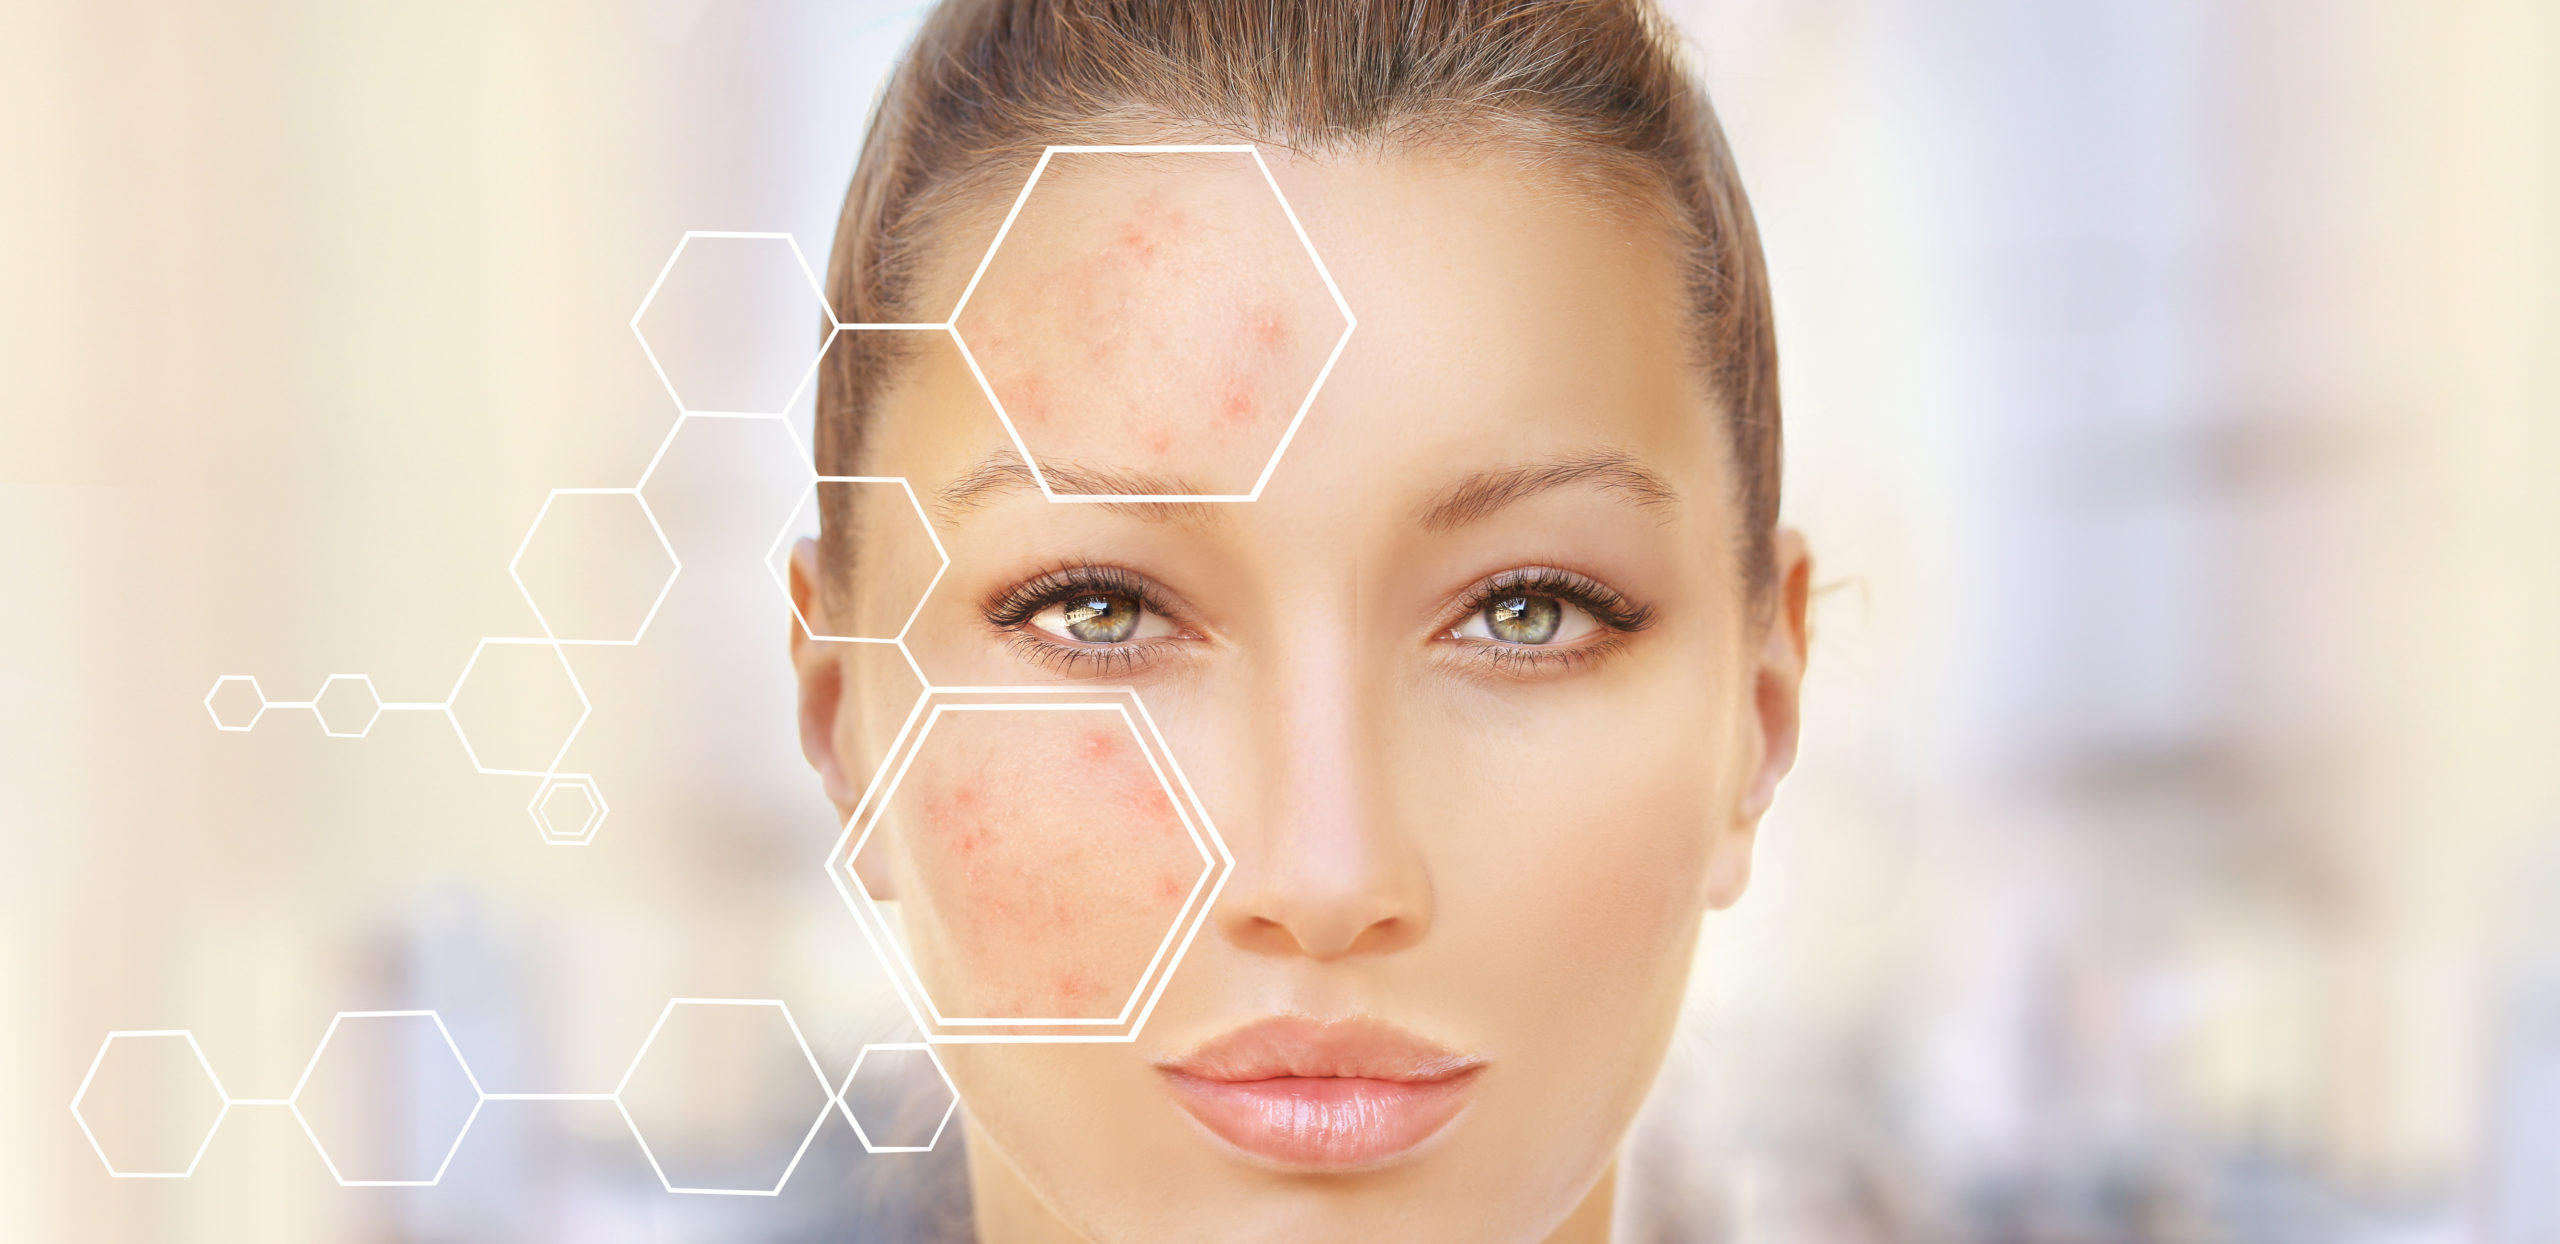 L’isotrétinoïne pour traiter l’acné : quelles précautions ?